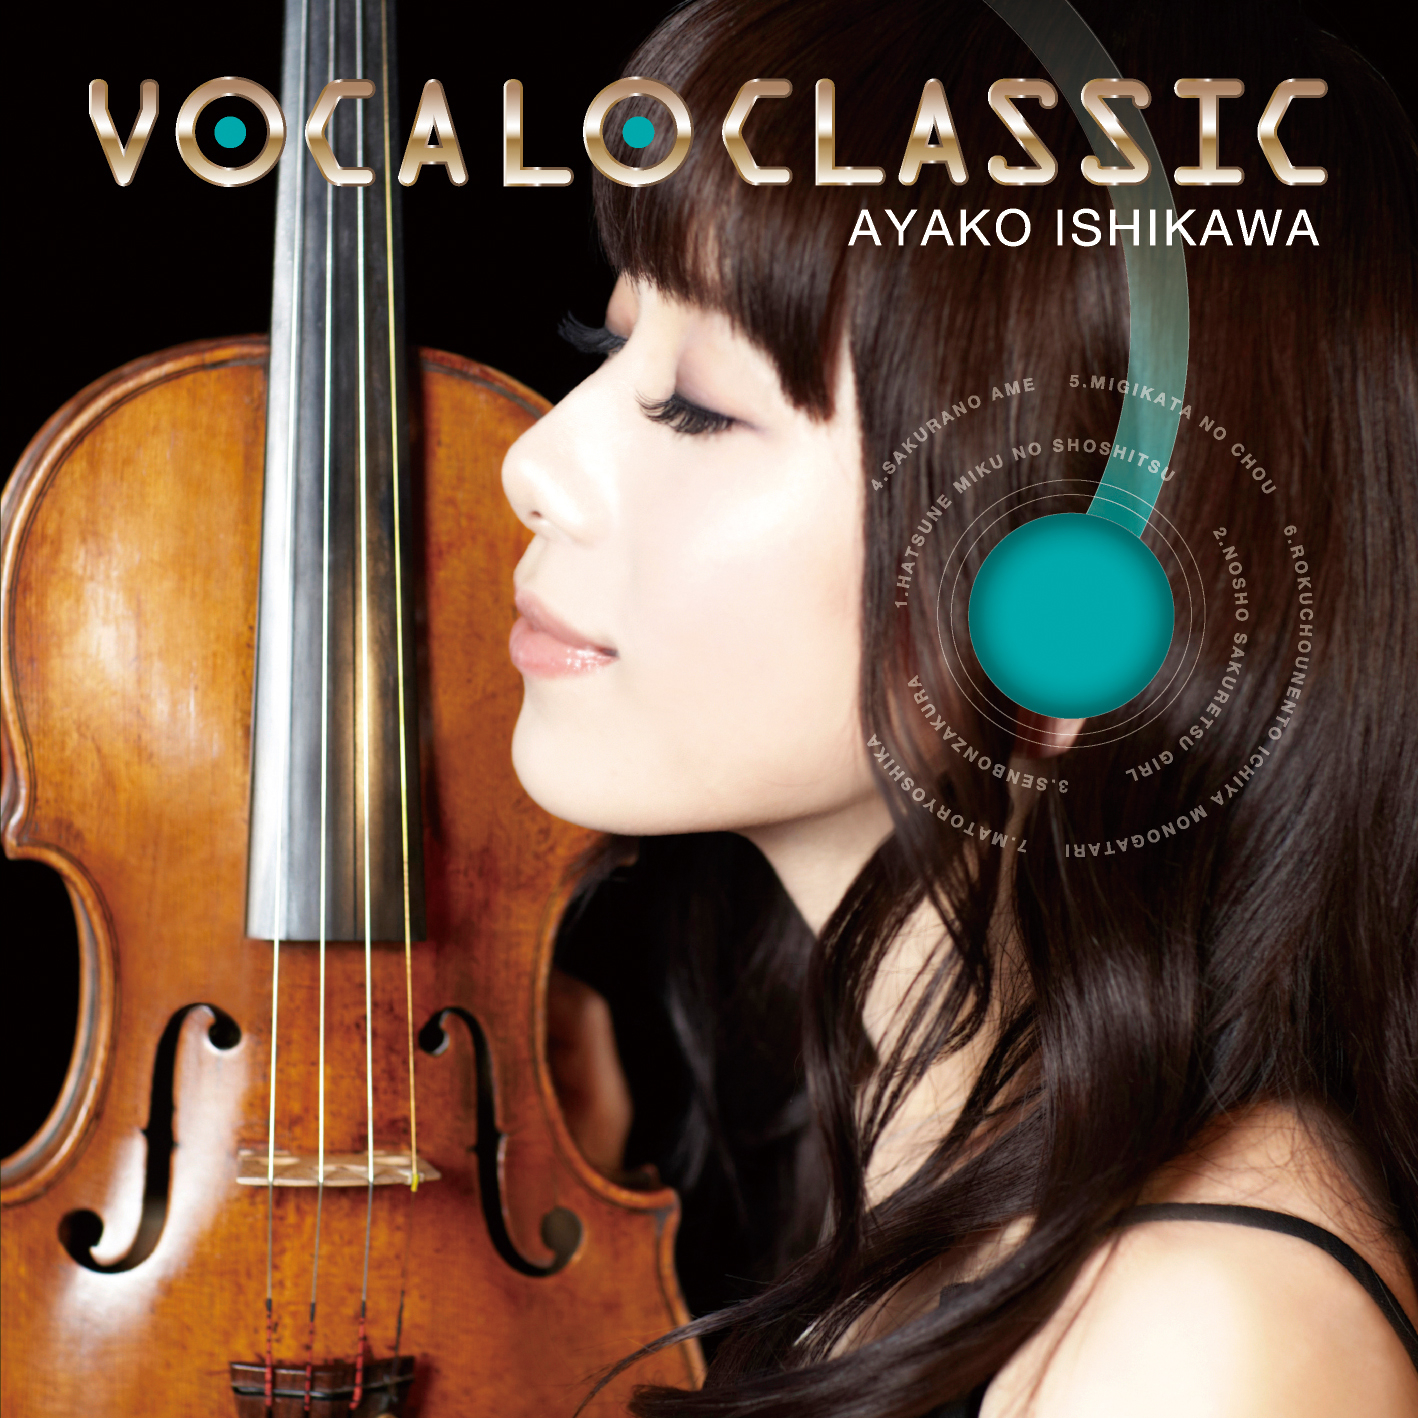 石川綾子 (いしかわあやこ) アルバム『VOCALO CLASSIC』(2014年) 高画質ジャケット画像